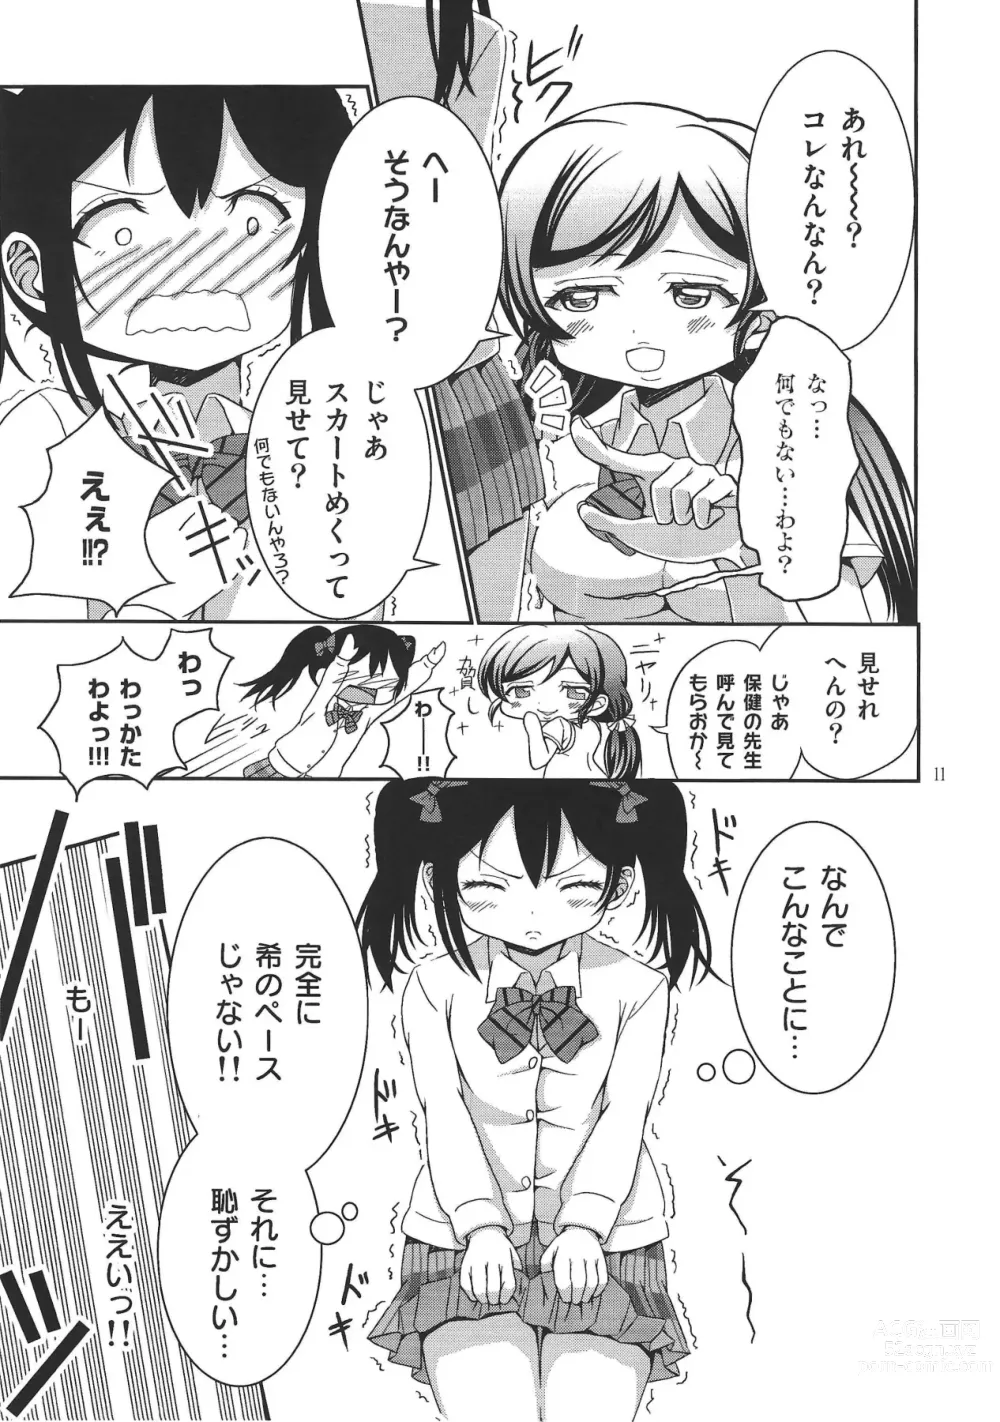 Page 10 of doujinshi Usotsuki Nico 2